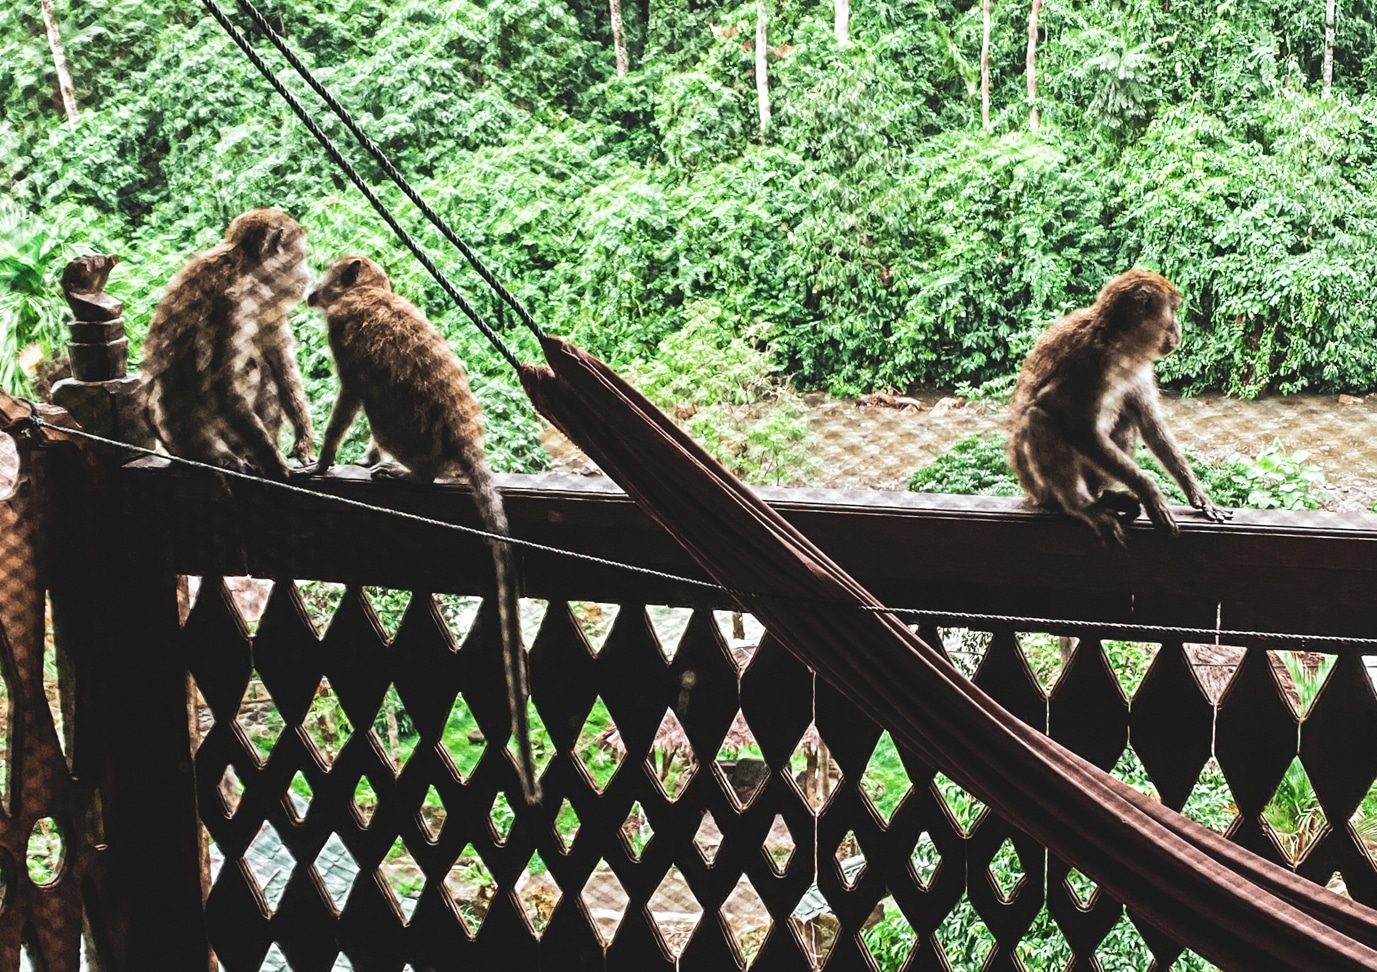 Monyet menyambut mereka setiap hari di balkon mereka.  / foto: pribadi